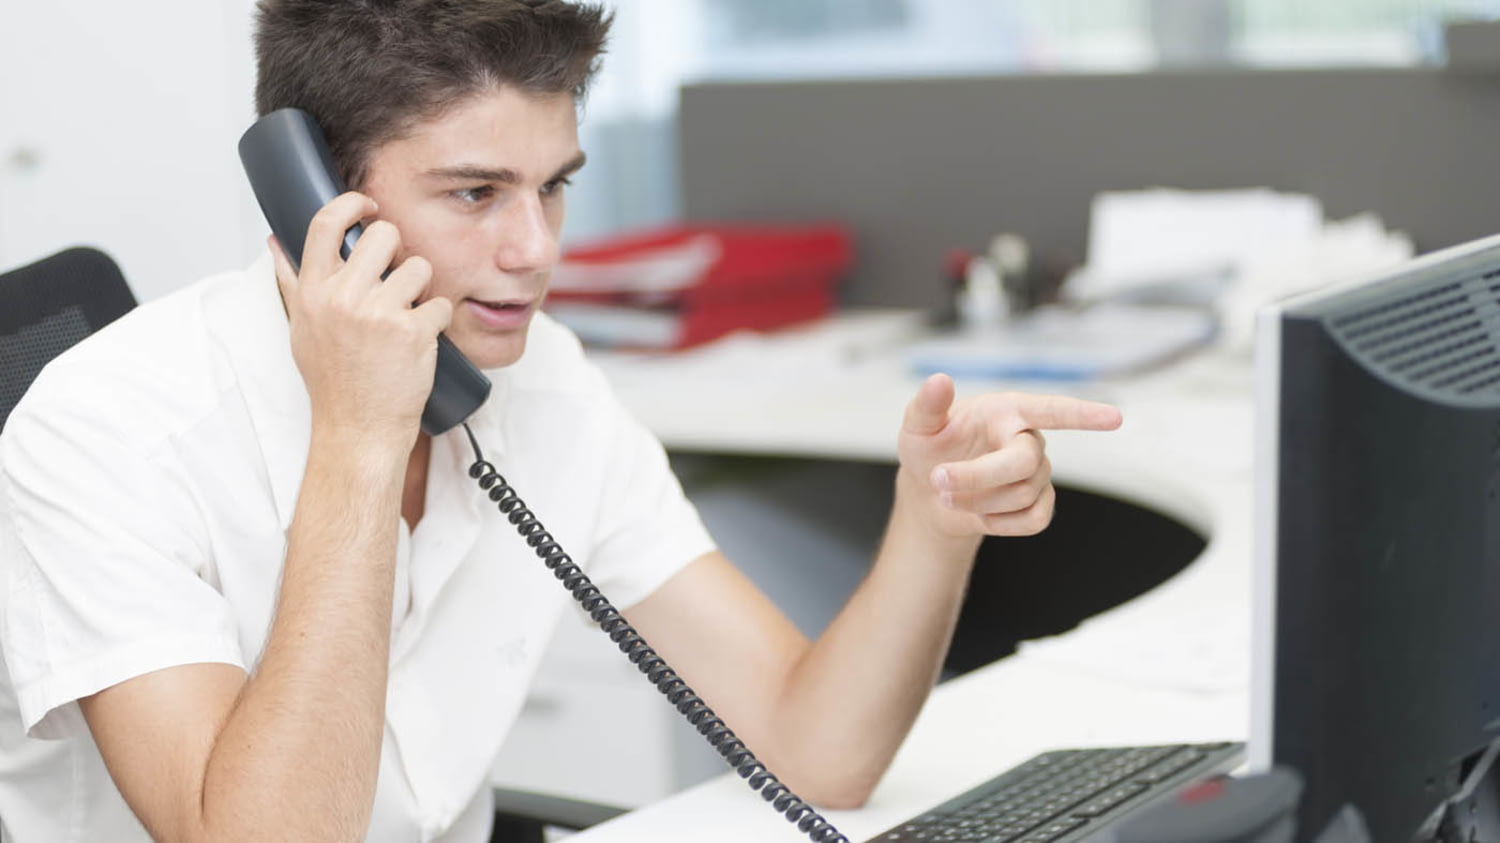 Ein telefonierender Jugendlicher sitzt an einem Büroarbeitsplatz und deutet mit der linken Hand auf den Monitor vor ihm